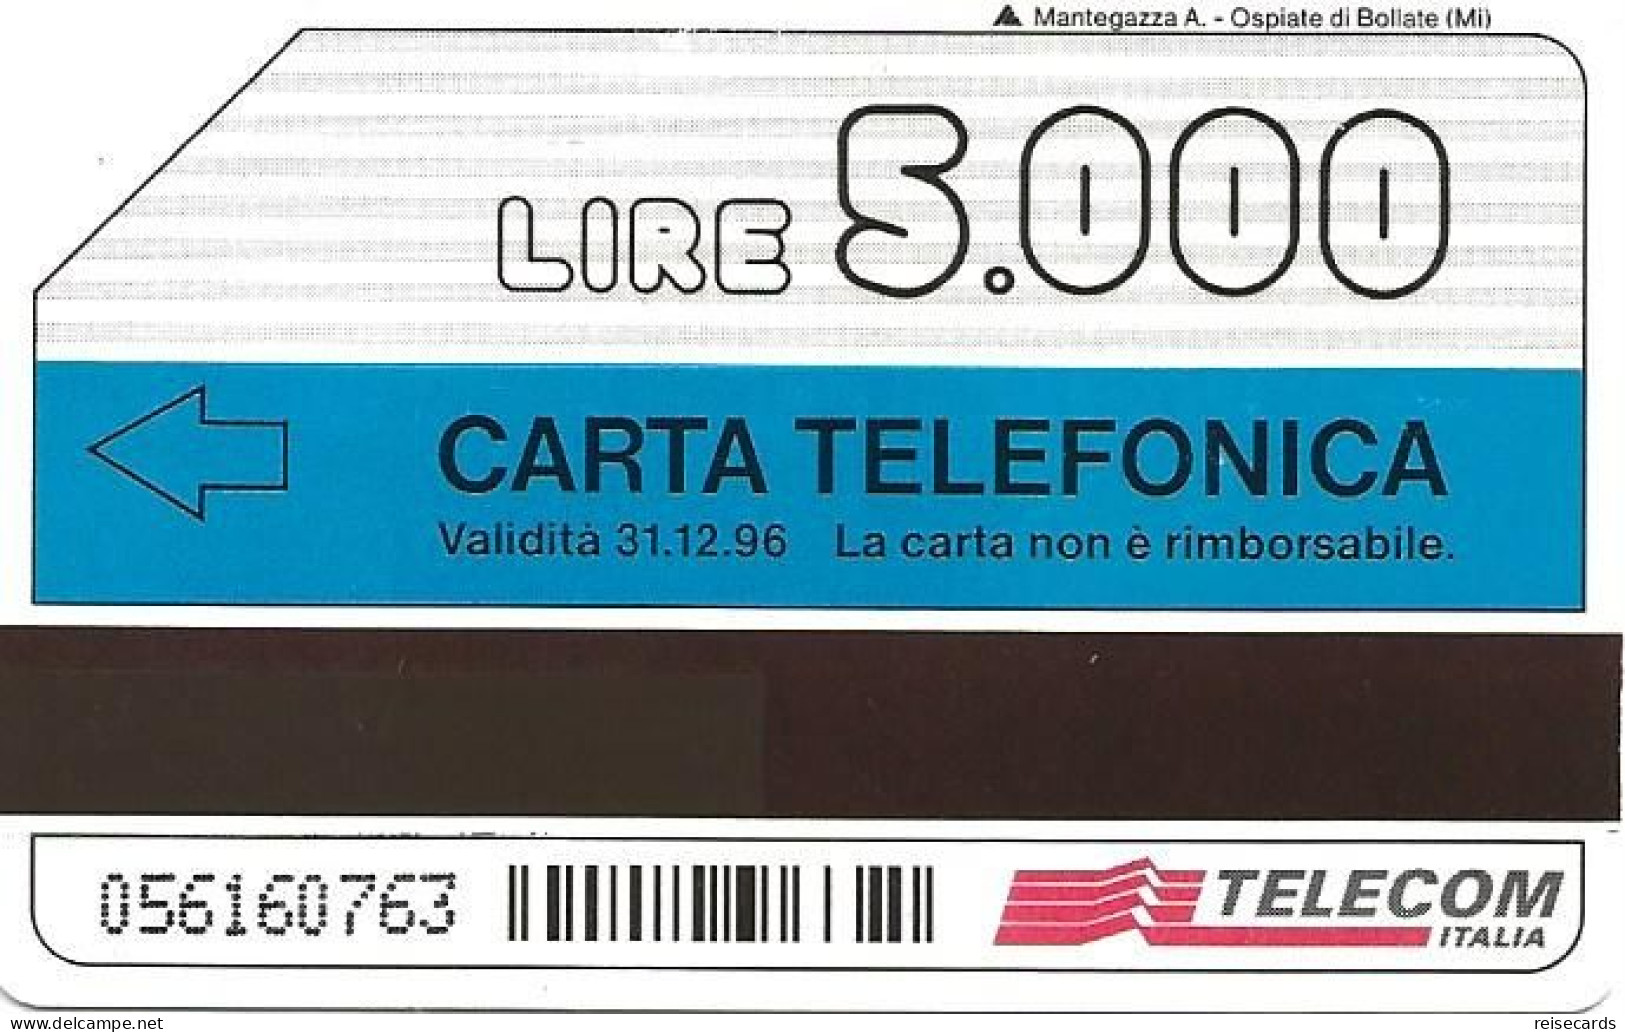 Italy: Telecom Italia - Un Nome Nuovo Guida Le Telecomunicazioni - Öff. Werbe-TK